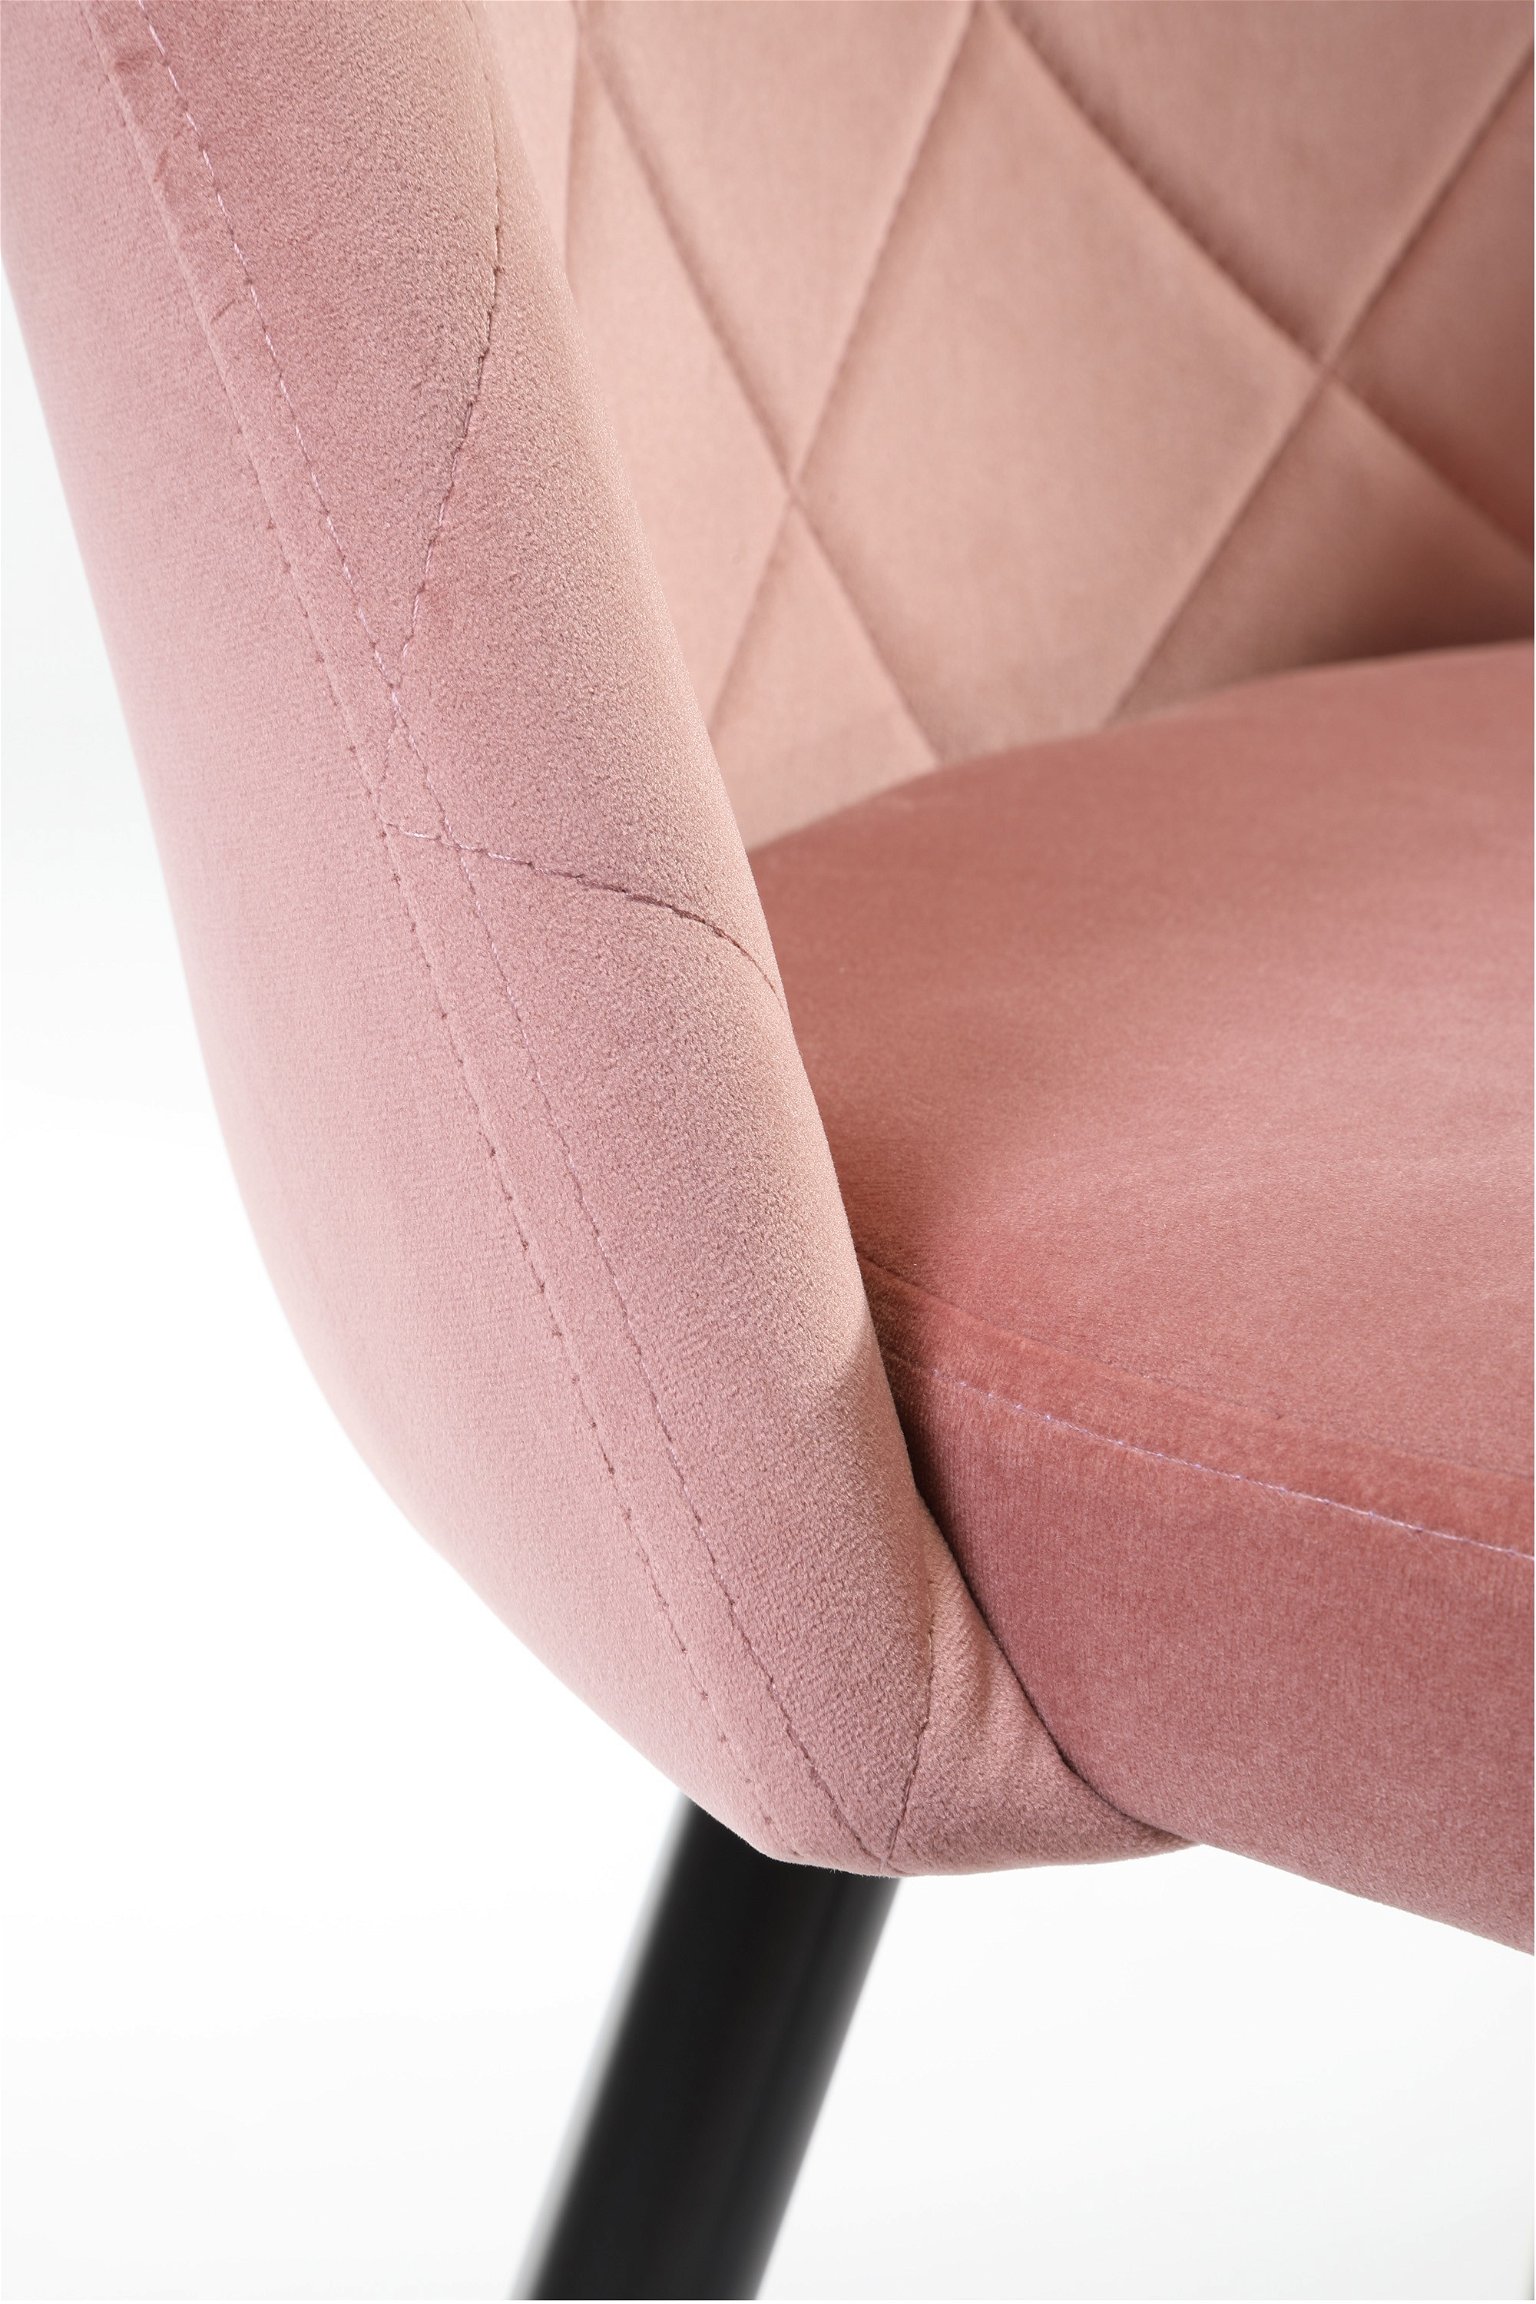 2-ių kėdžių komplektas SJ.077, rožinė - 5